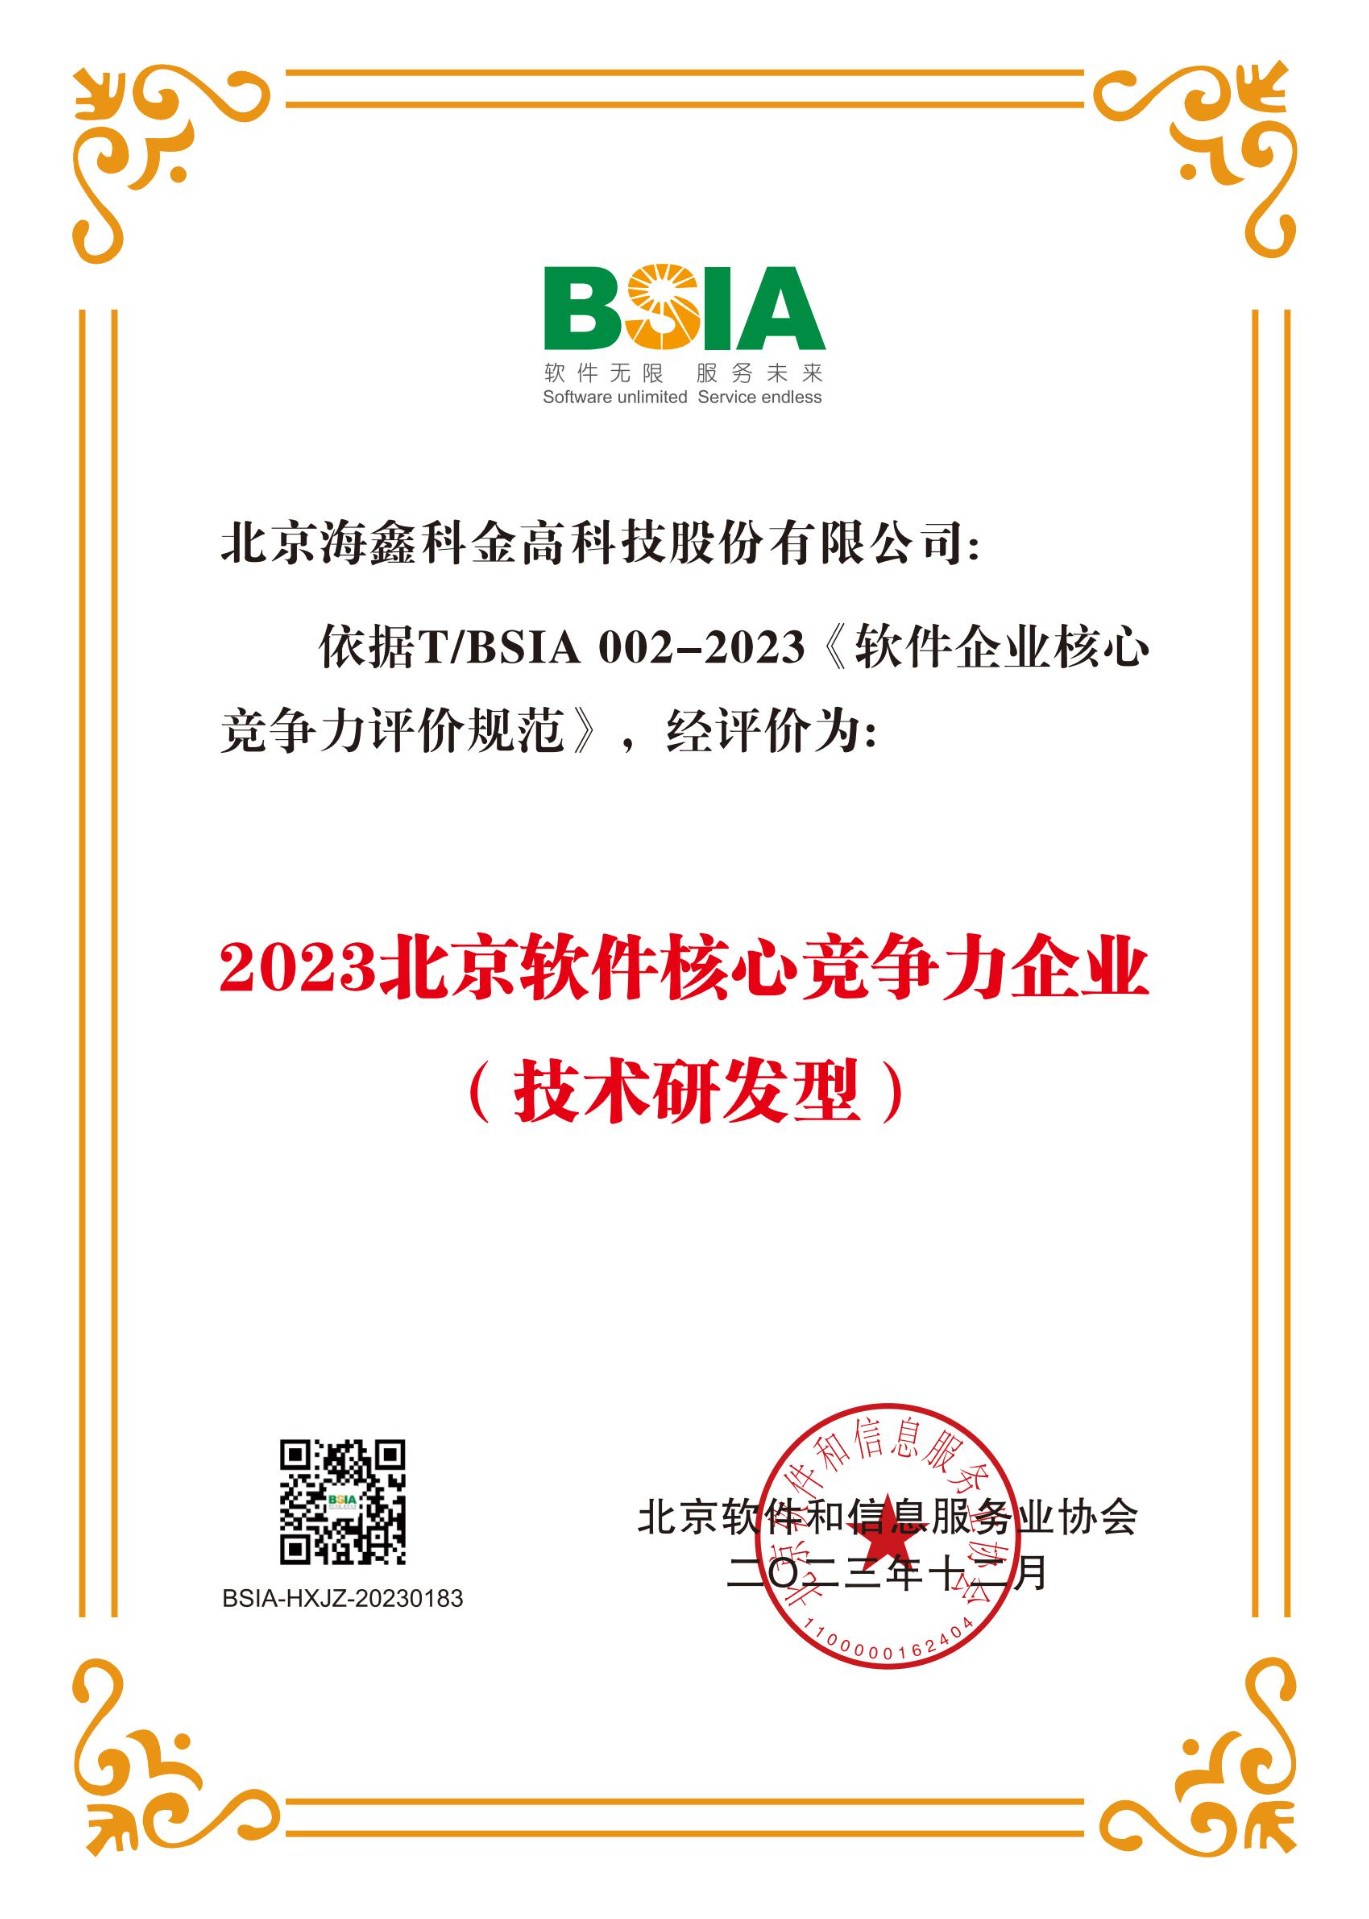 喜报|9999js金沙老品牌荣获“2023北京软件核心竞争力企业（技术研发型）”称号！